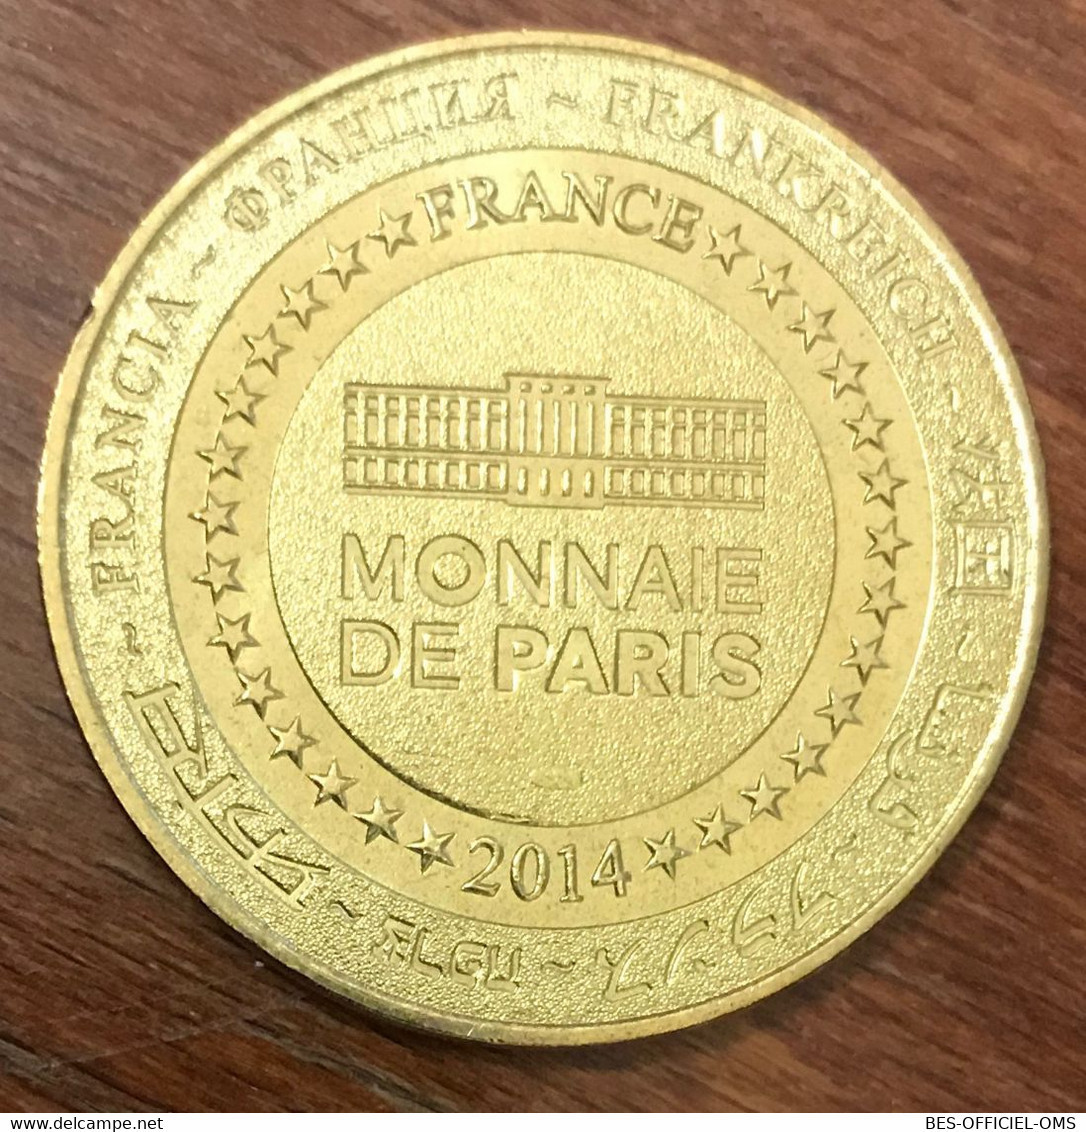 13 MARSEILLE FREDERIC MISTRAL 1914 - 2014 MÉDAILLE SOUVENIR MONNAIE DE PARIS JETON TOURISTIQUE MEDALS COINS TOKENS - 2014